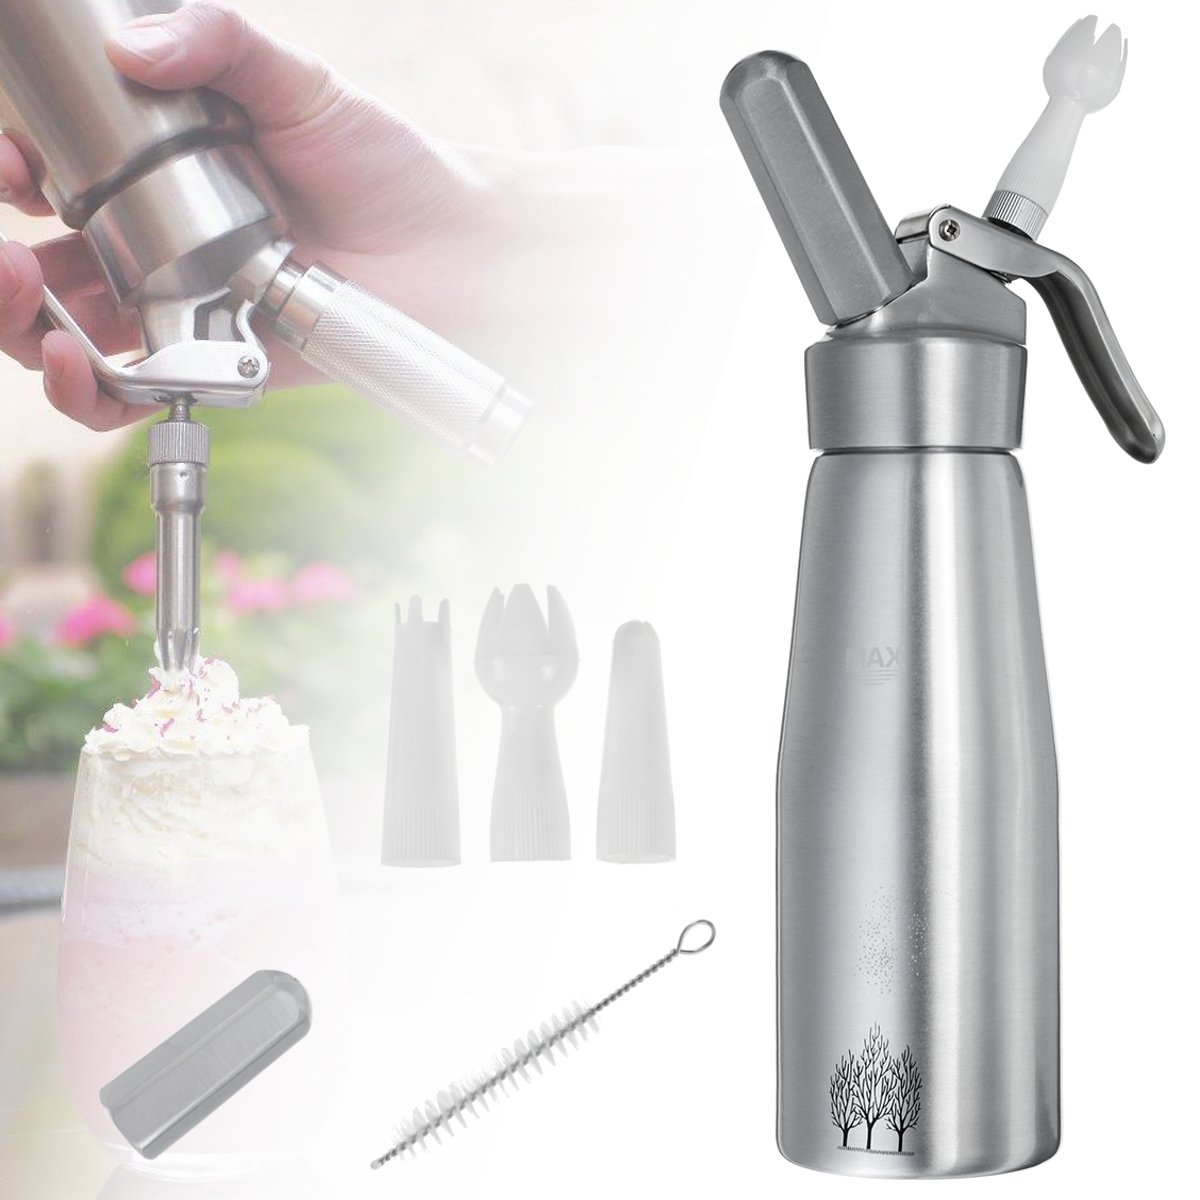 500ml-Cream-Whipper-Whip-Coffee-Dessert-Butter-Dispenser-Foam-Whipped-Aluminum-1590985